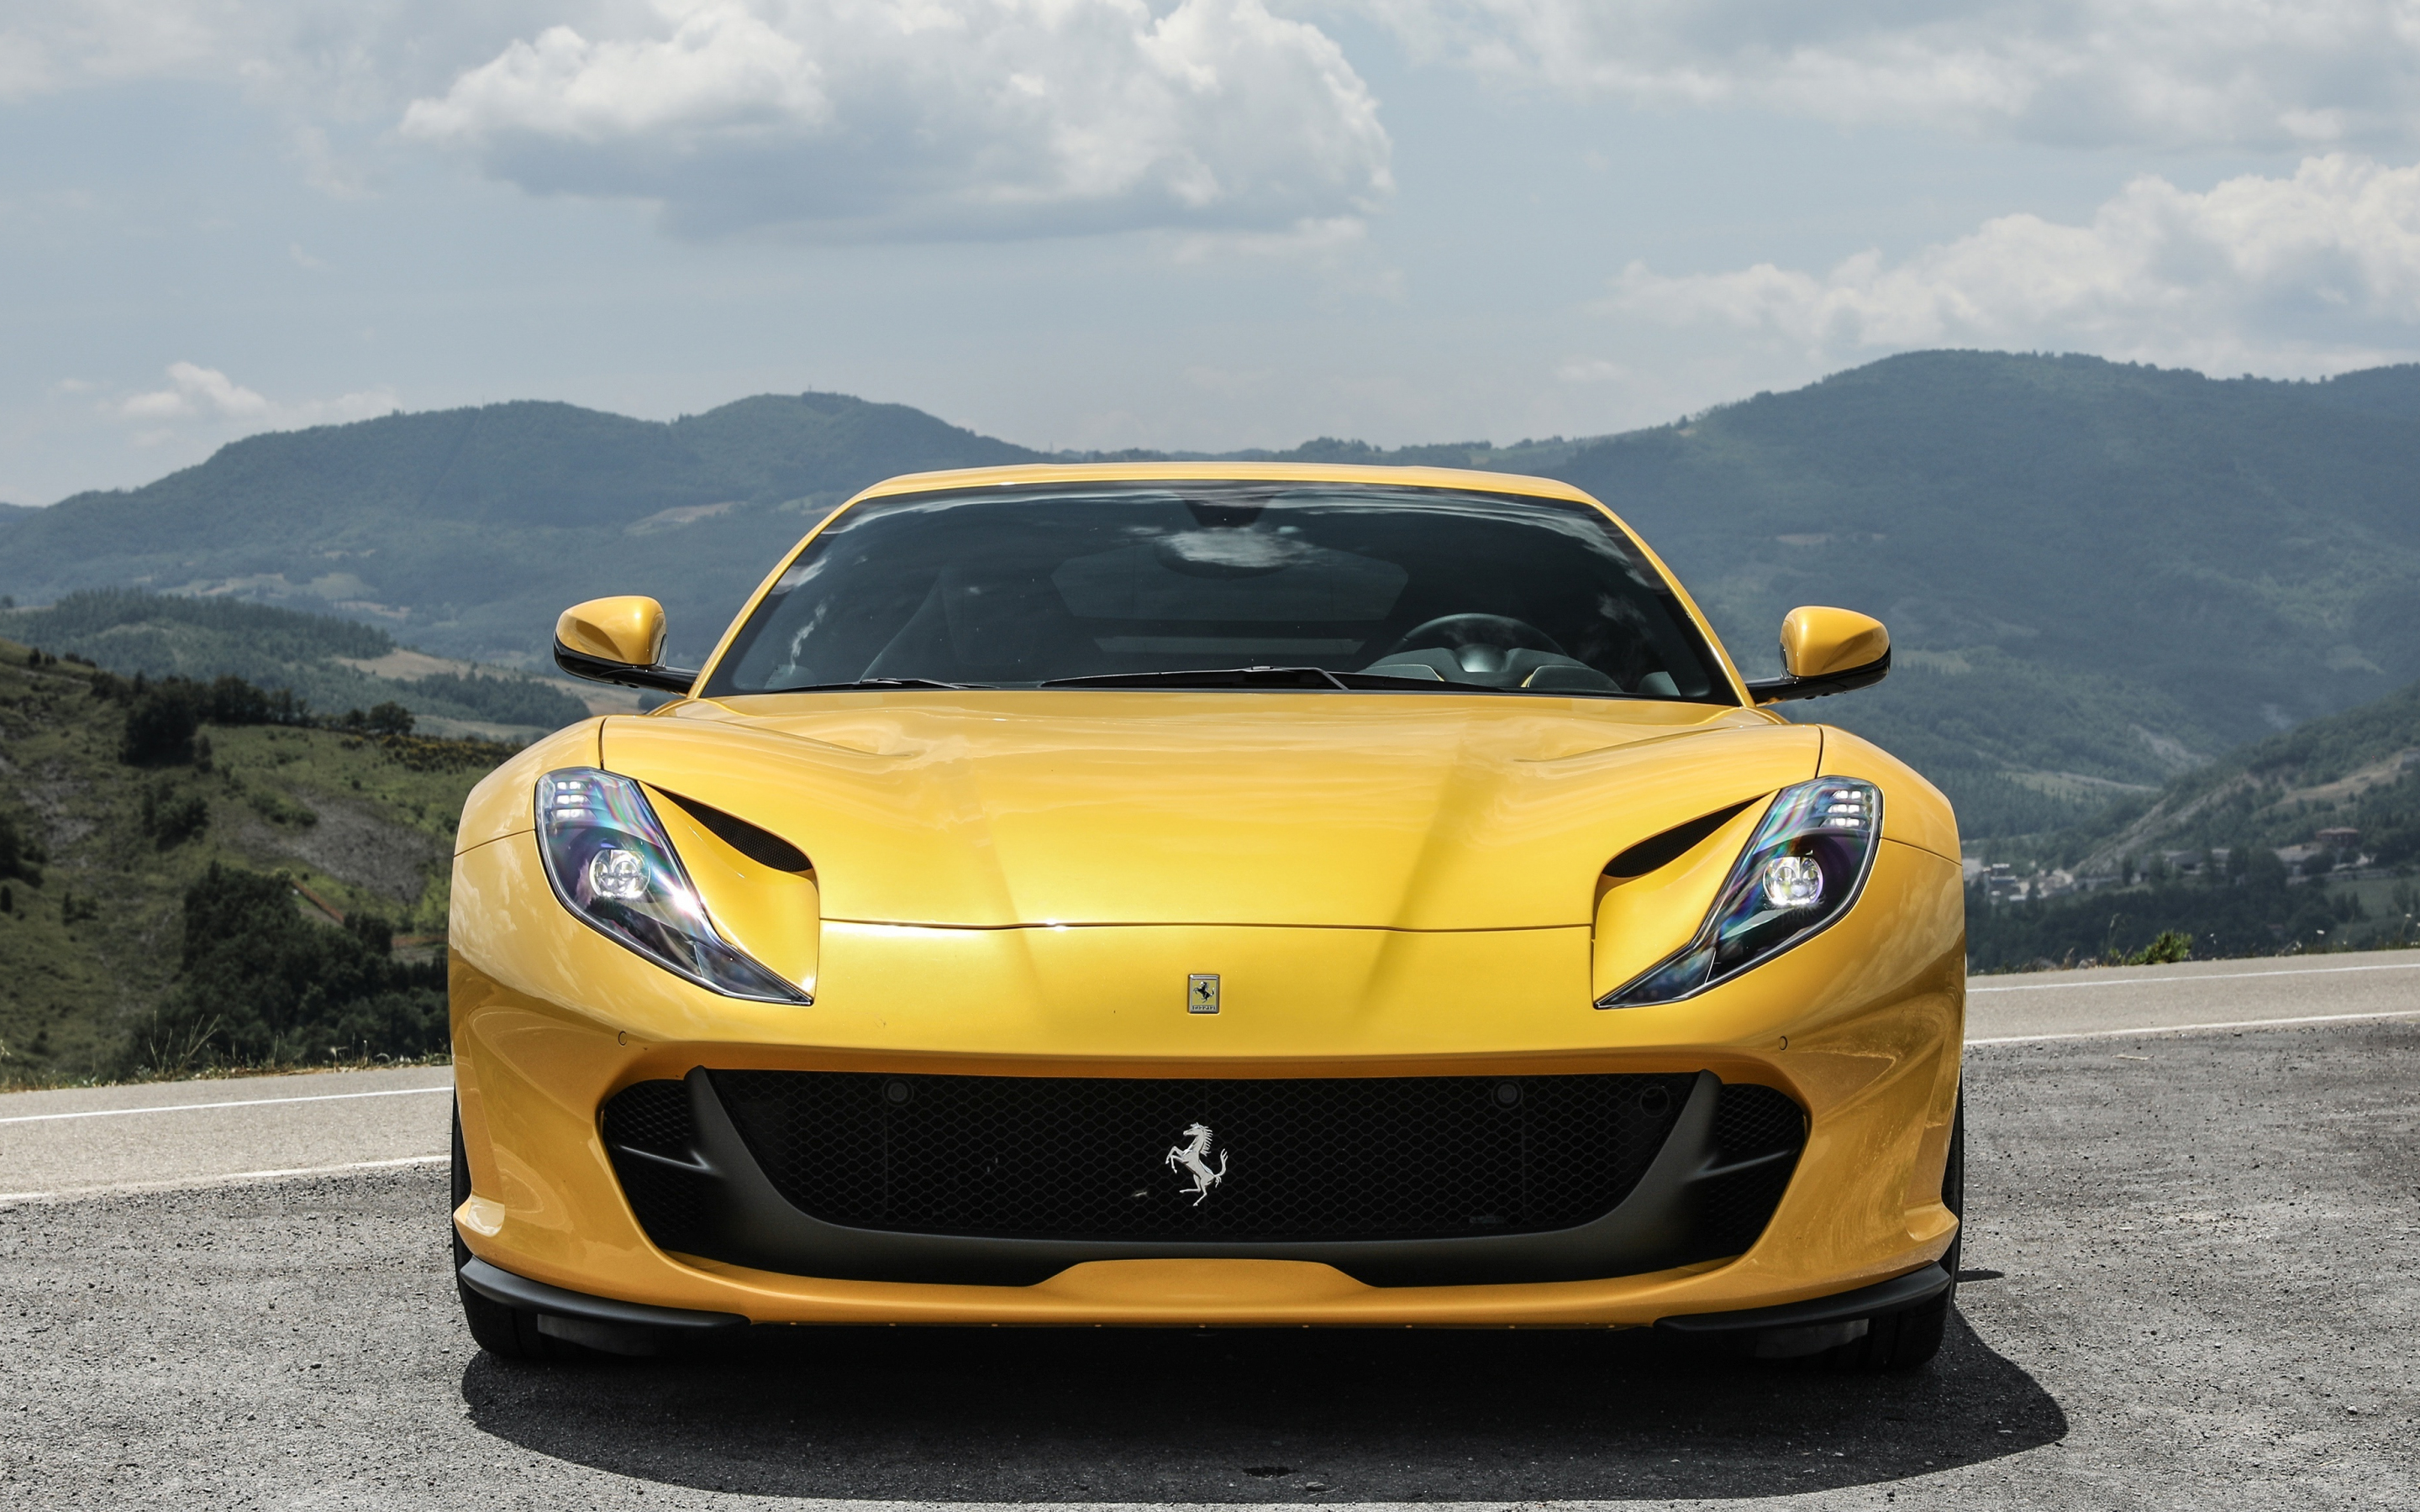 Yellow, sports car, Ferrari 812 superfast, 2880x1800 wallpaper